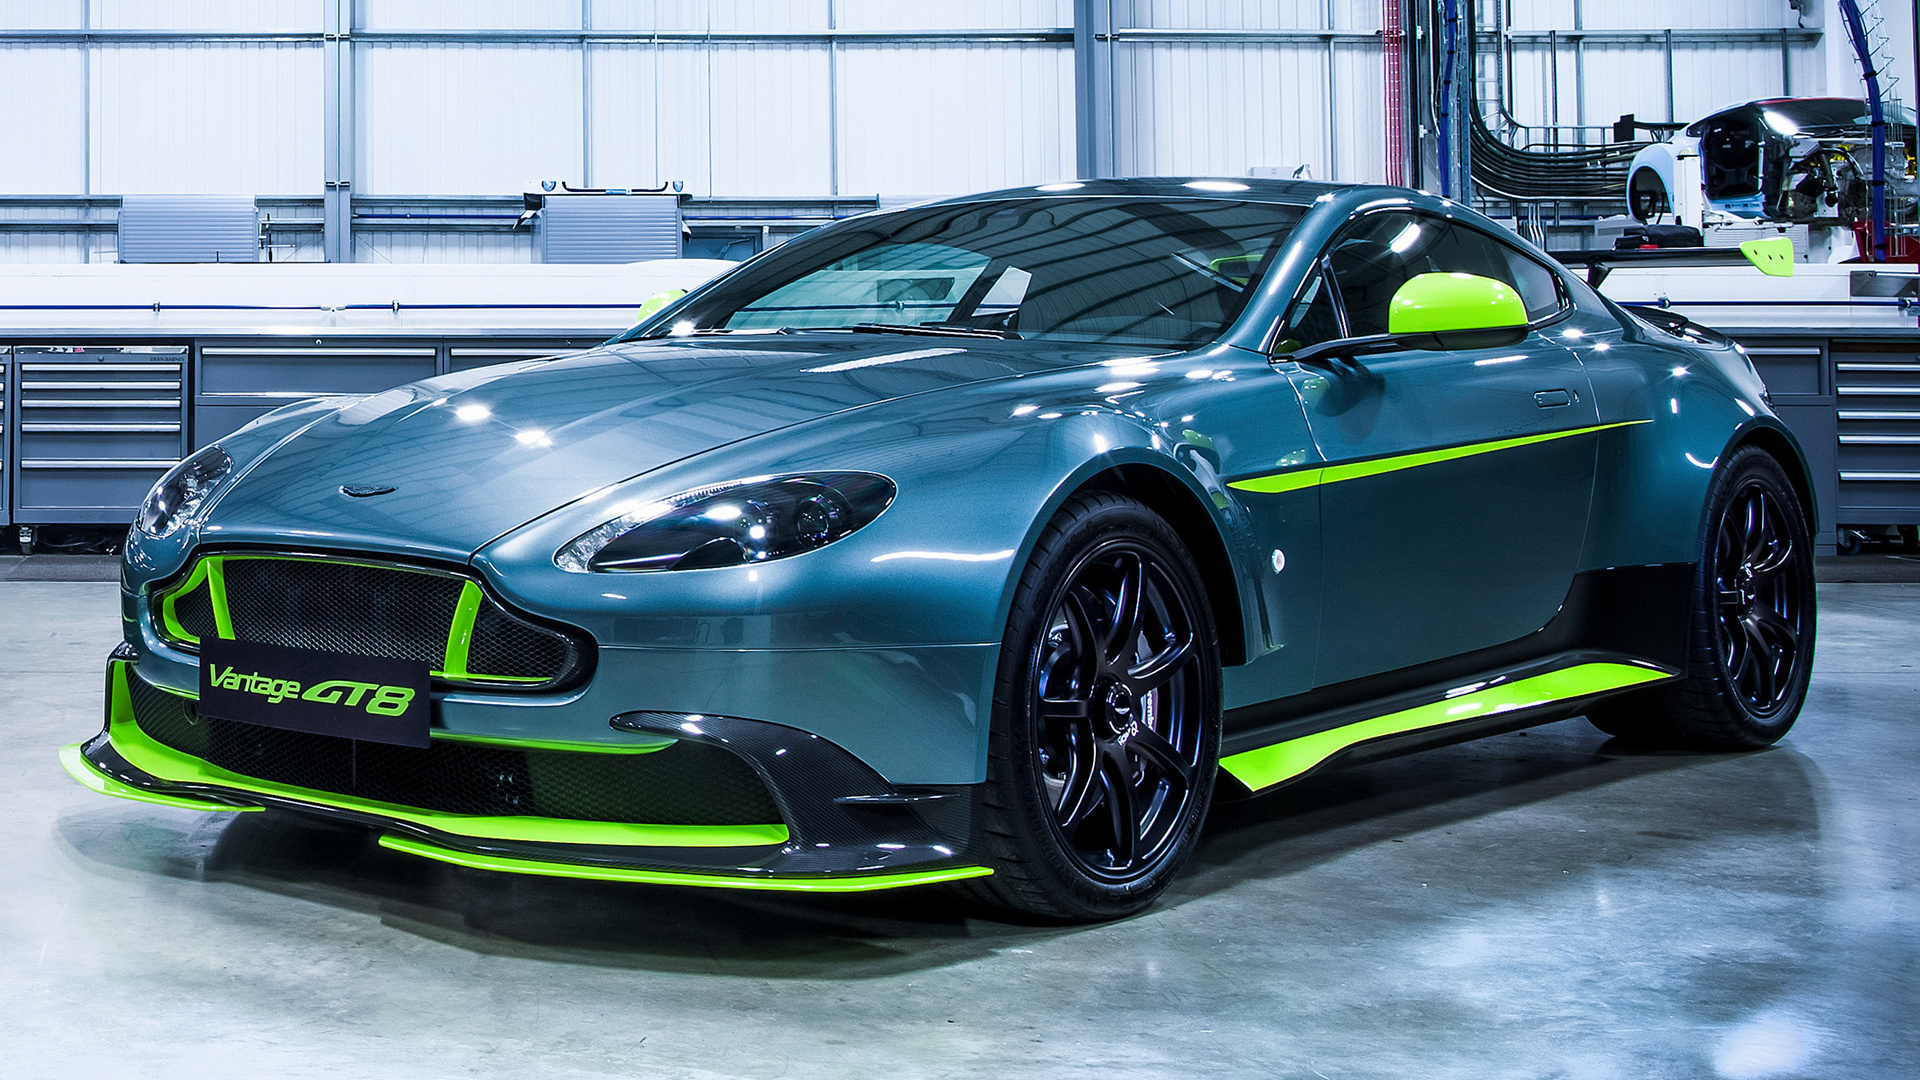 Descargar fondos de escritorio de Aston Martin Vantage Gt8 HD